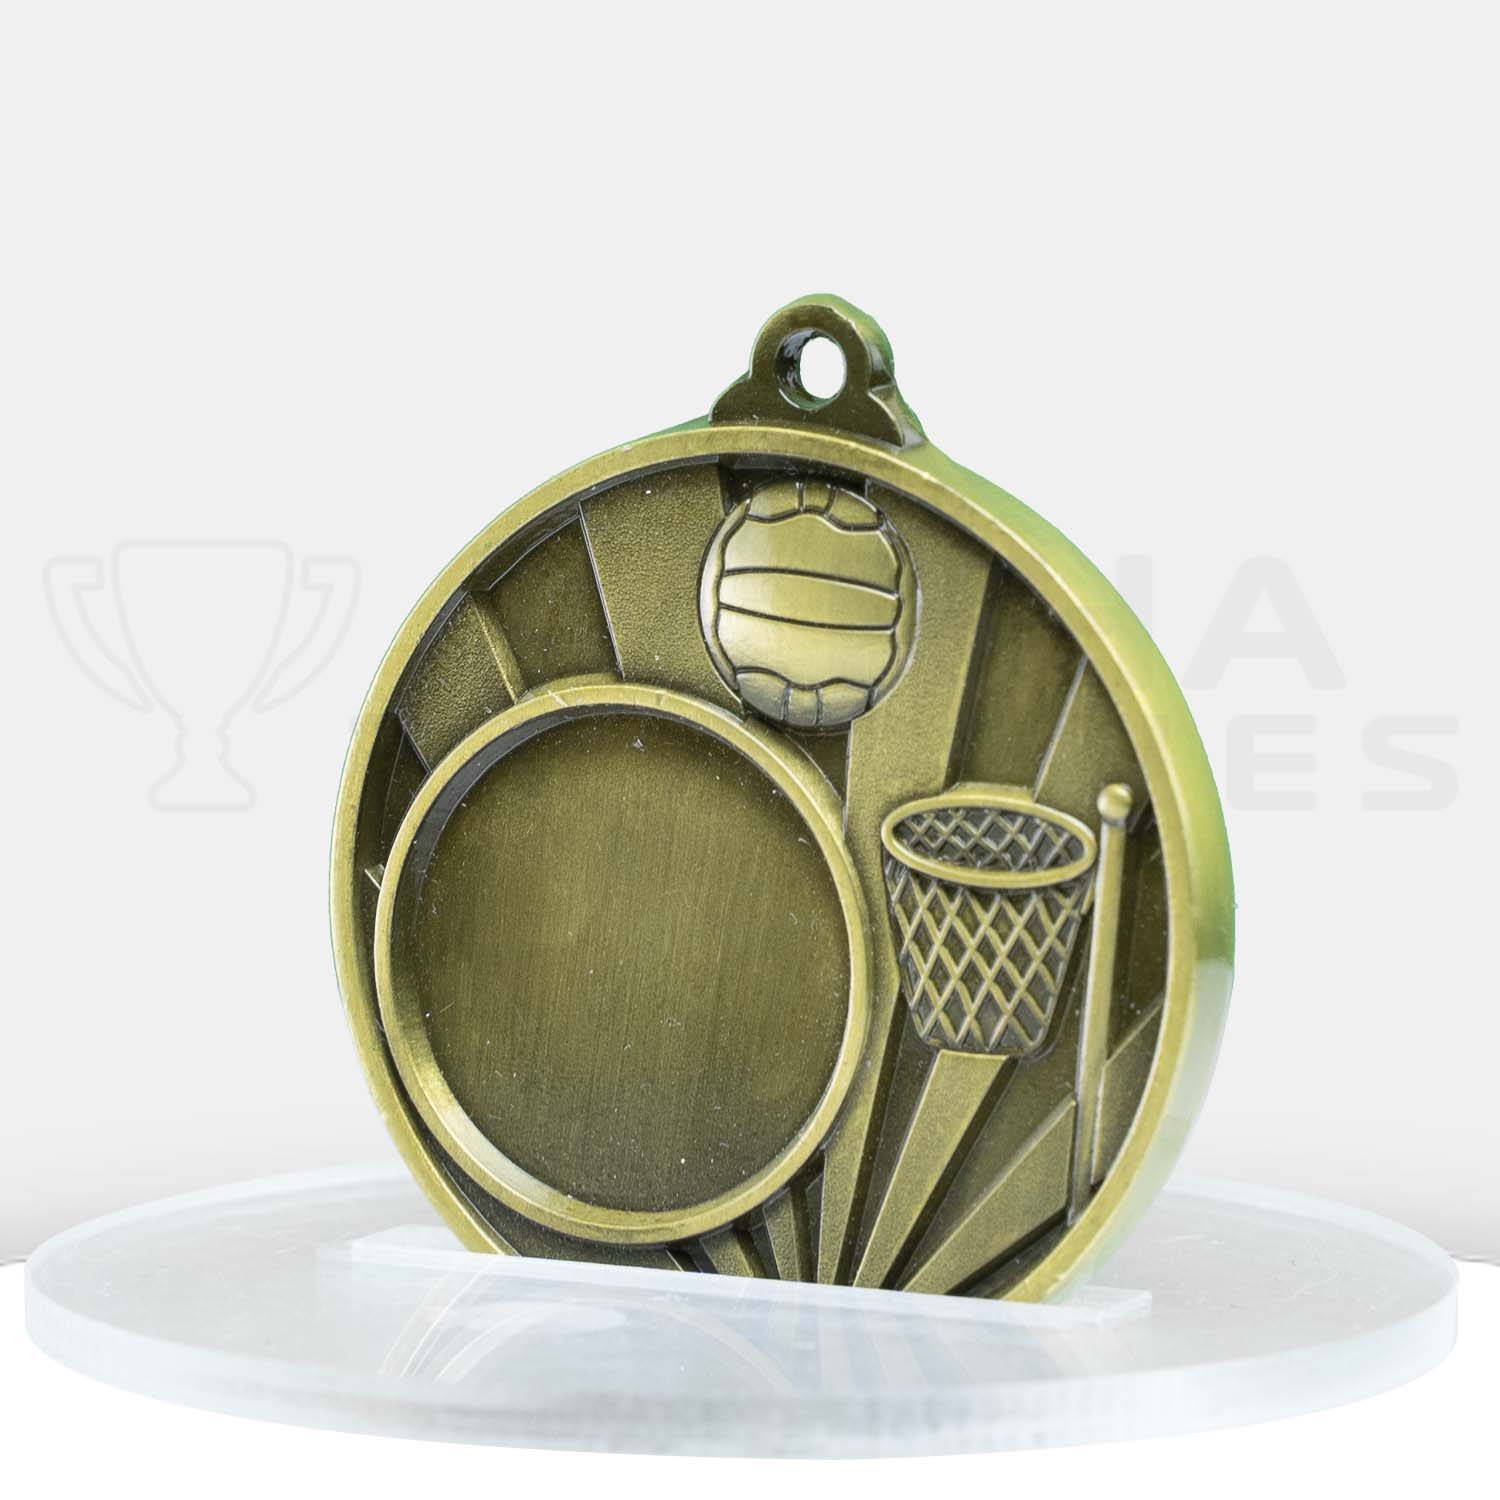 sunrise-medal-netball-25mm-insert-gold-1076c-8g-side